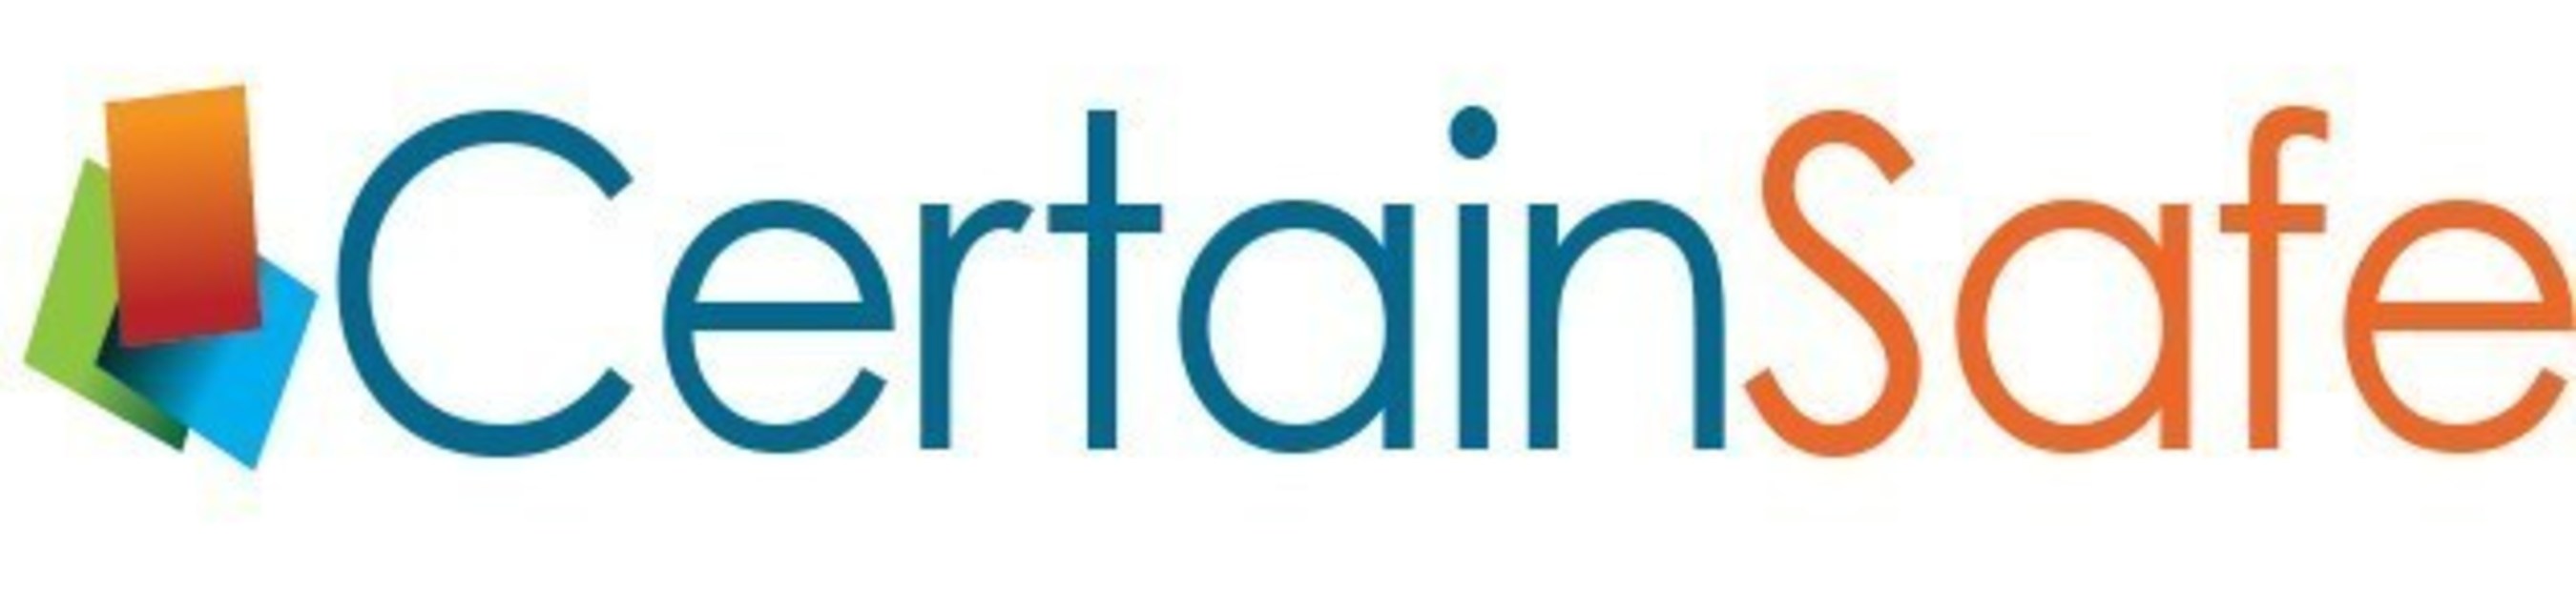 CertainSafe logo